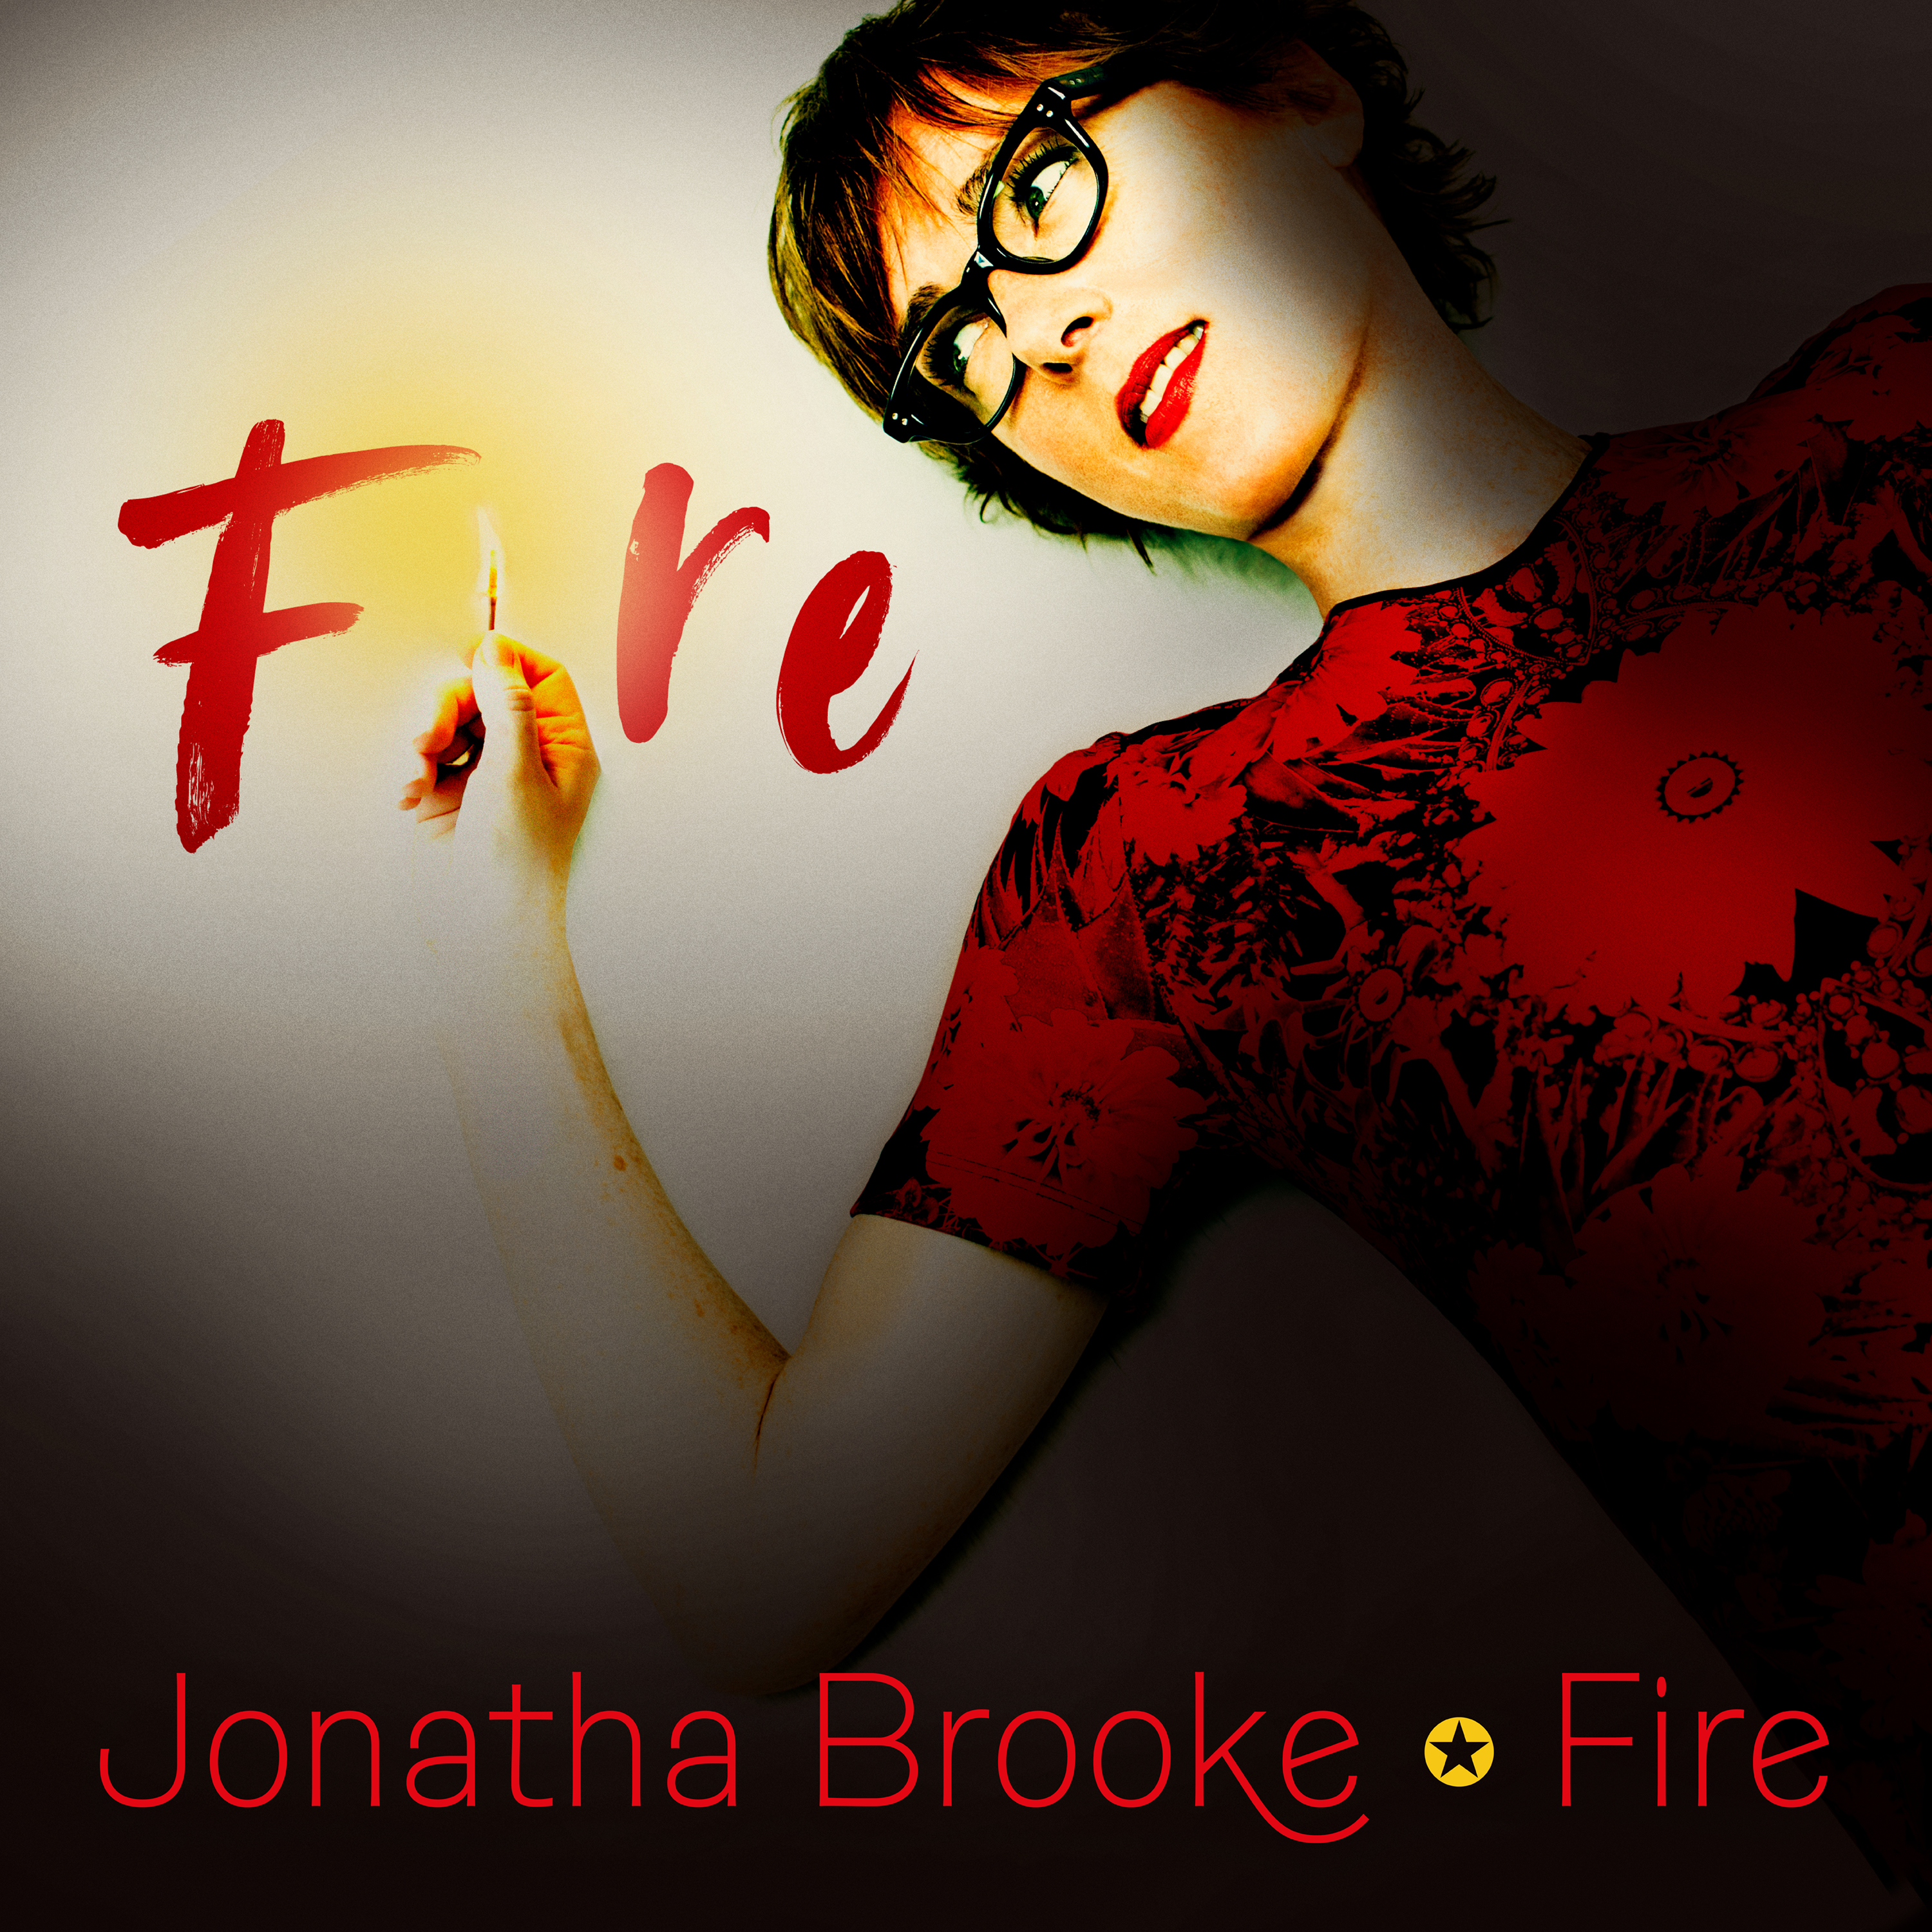 Jonatha Brooke wearing red and black dress holding lit match